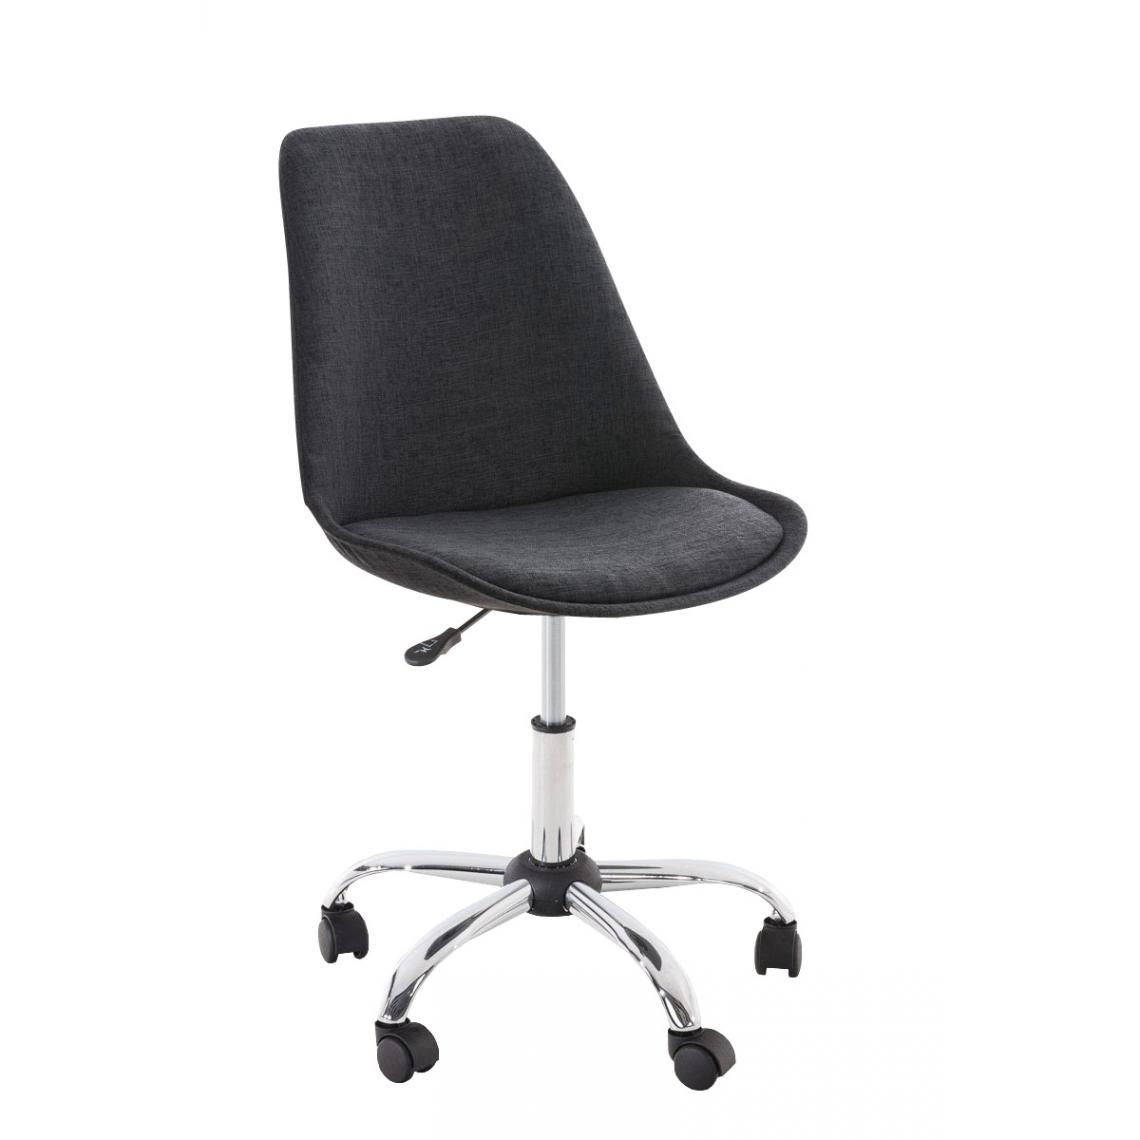 Icaverne - Admirable Chaise de bureau reference Manille tissu couleur gris foncé - Chaises